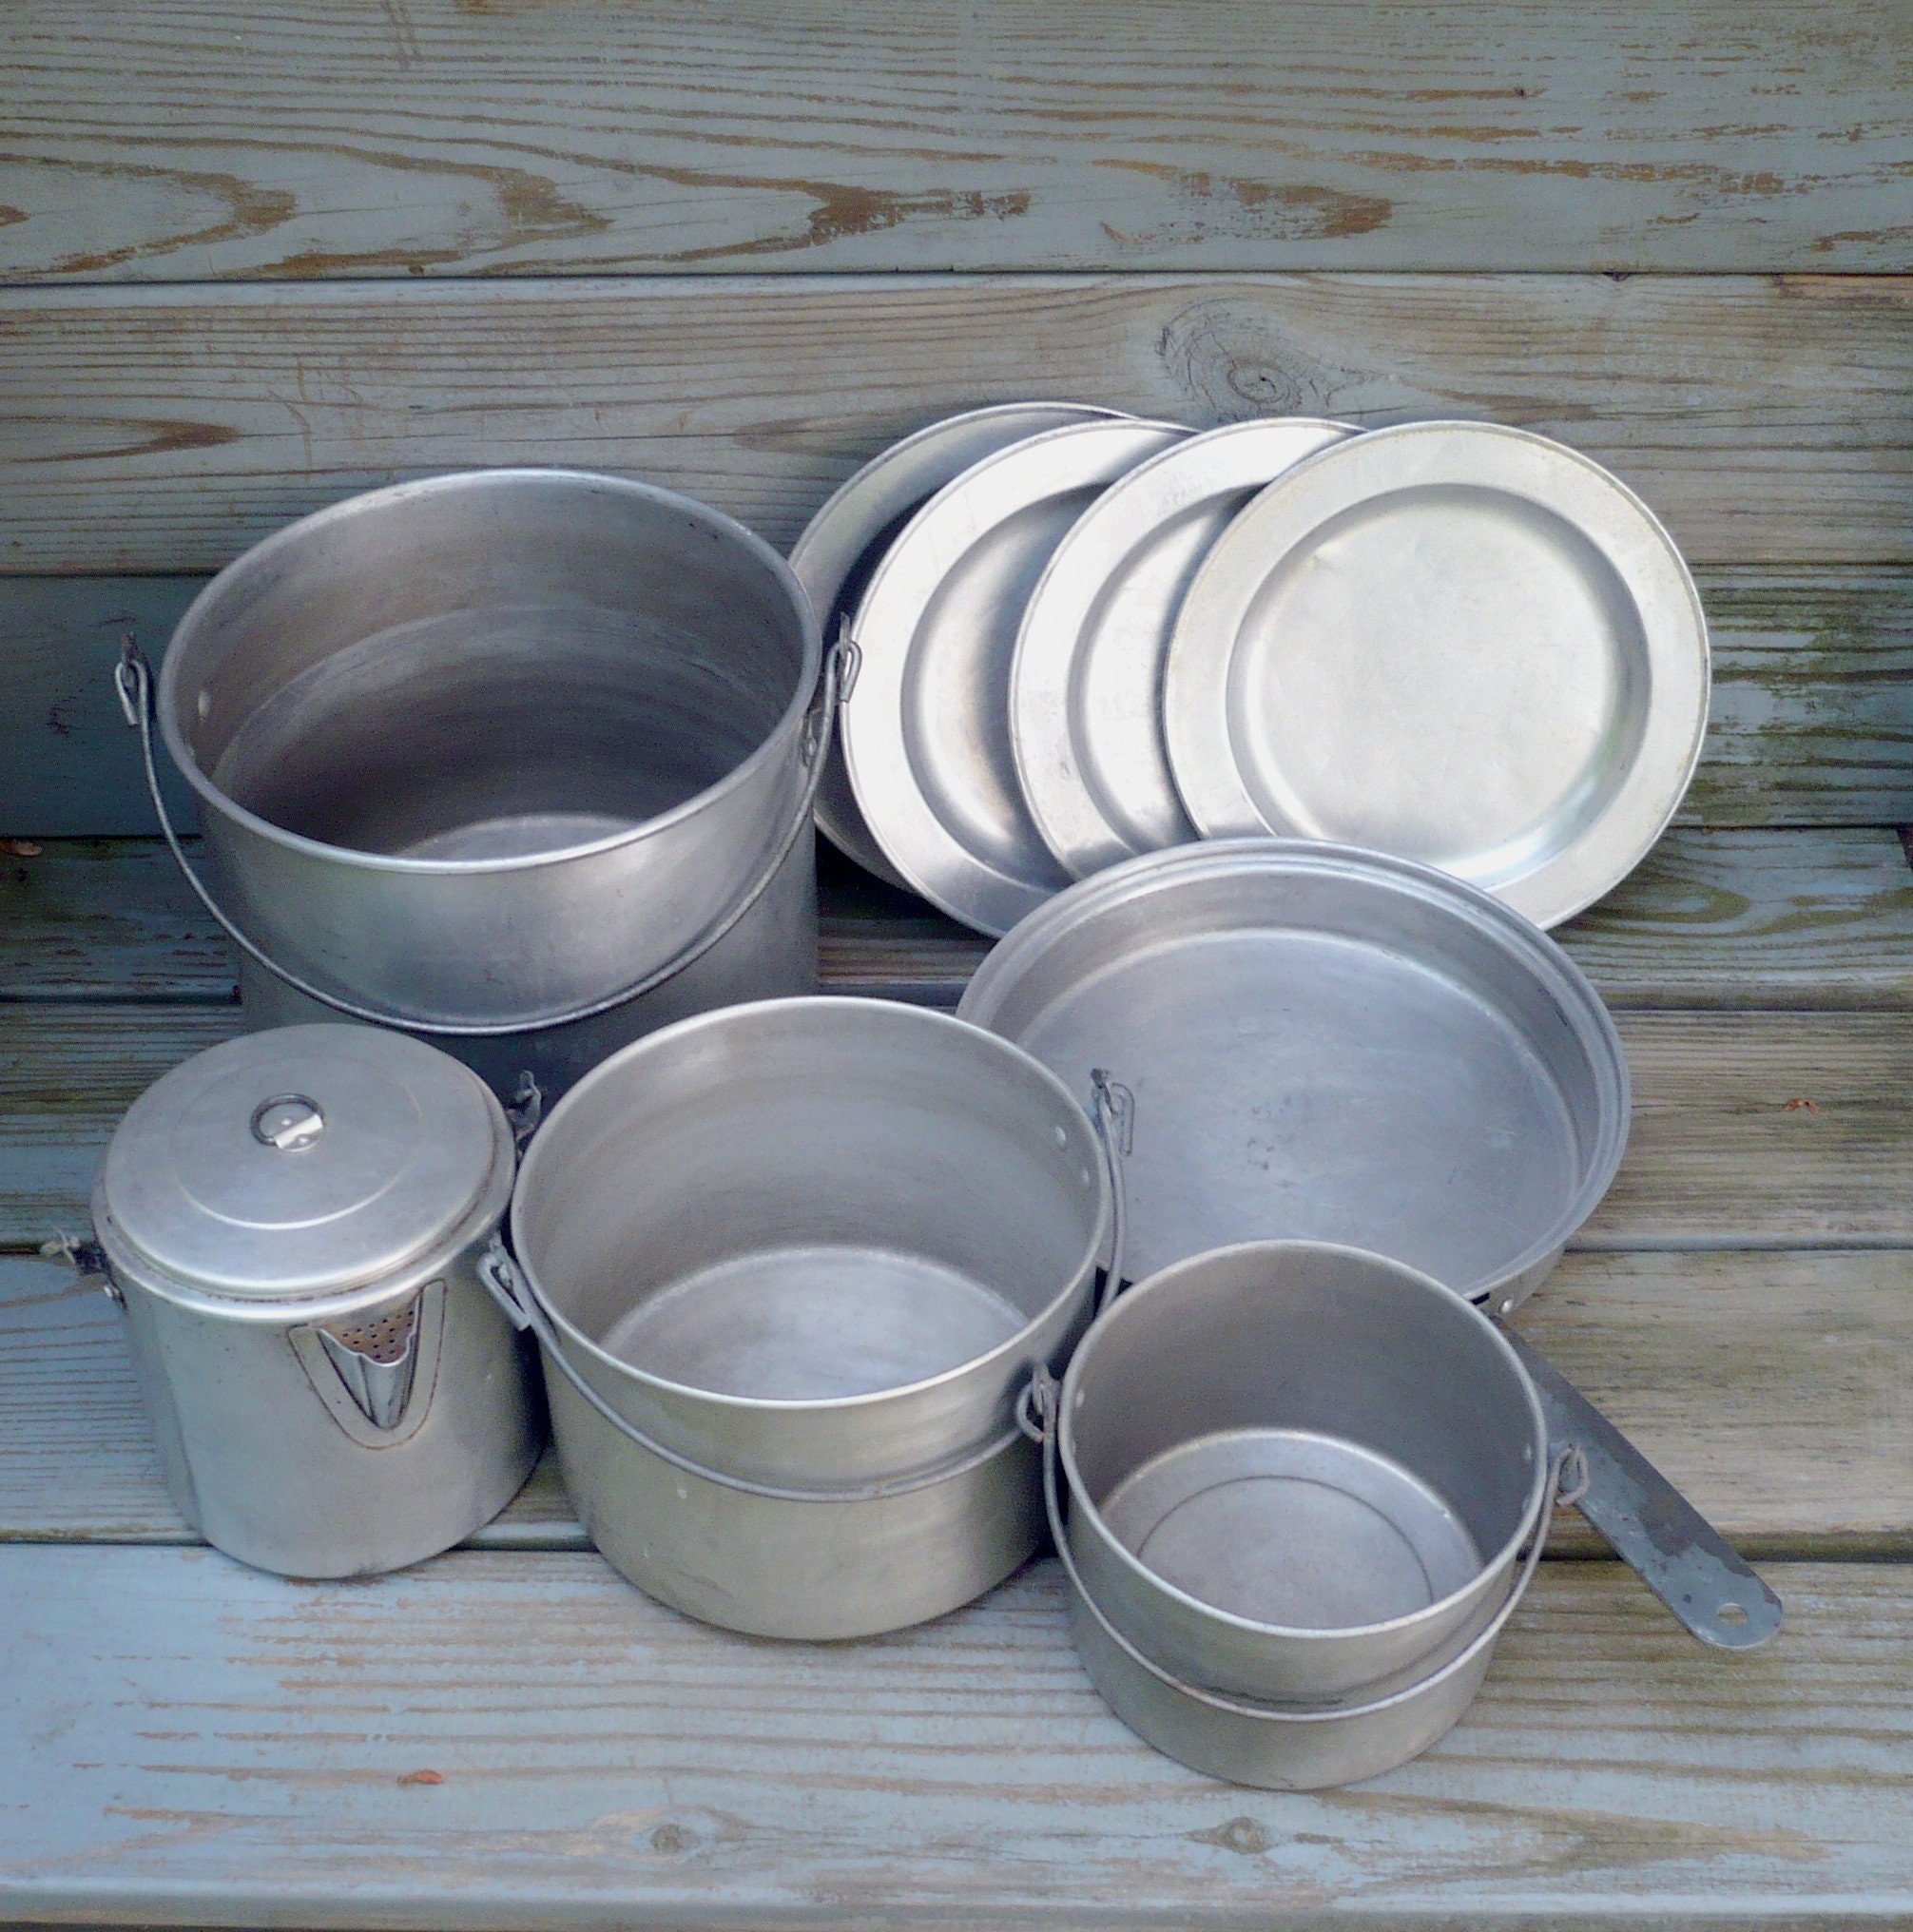 Camping Cookware Set 11 piece Aluminum Nesting Pot Pans Mess Kit